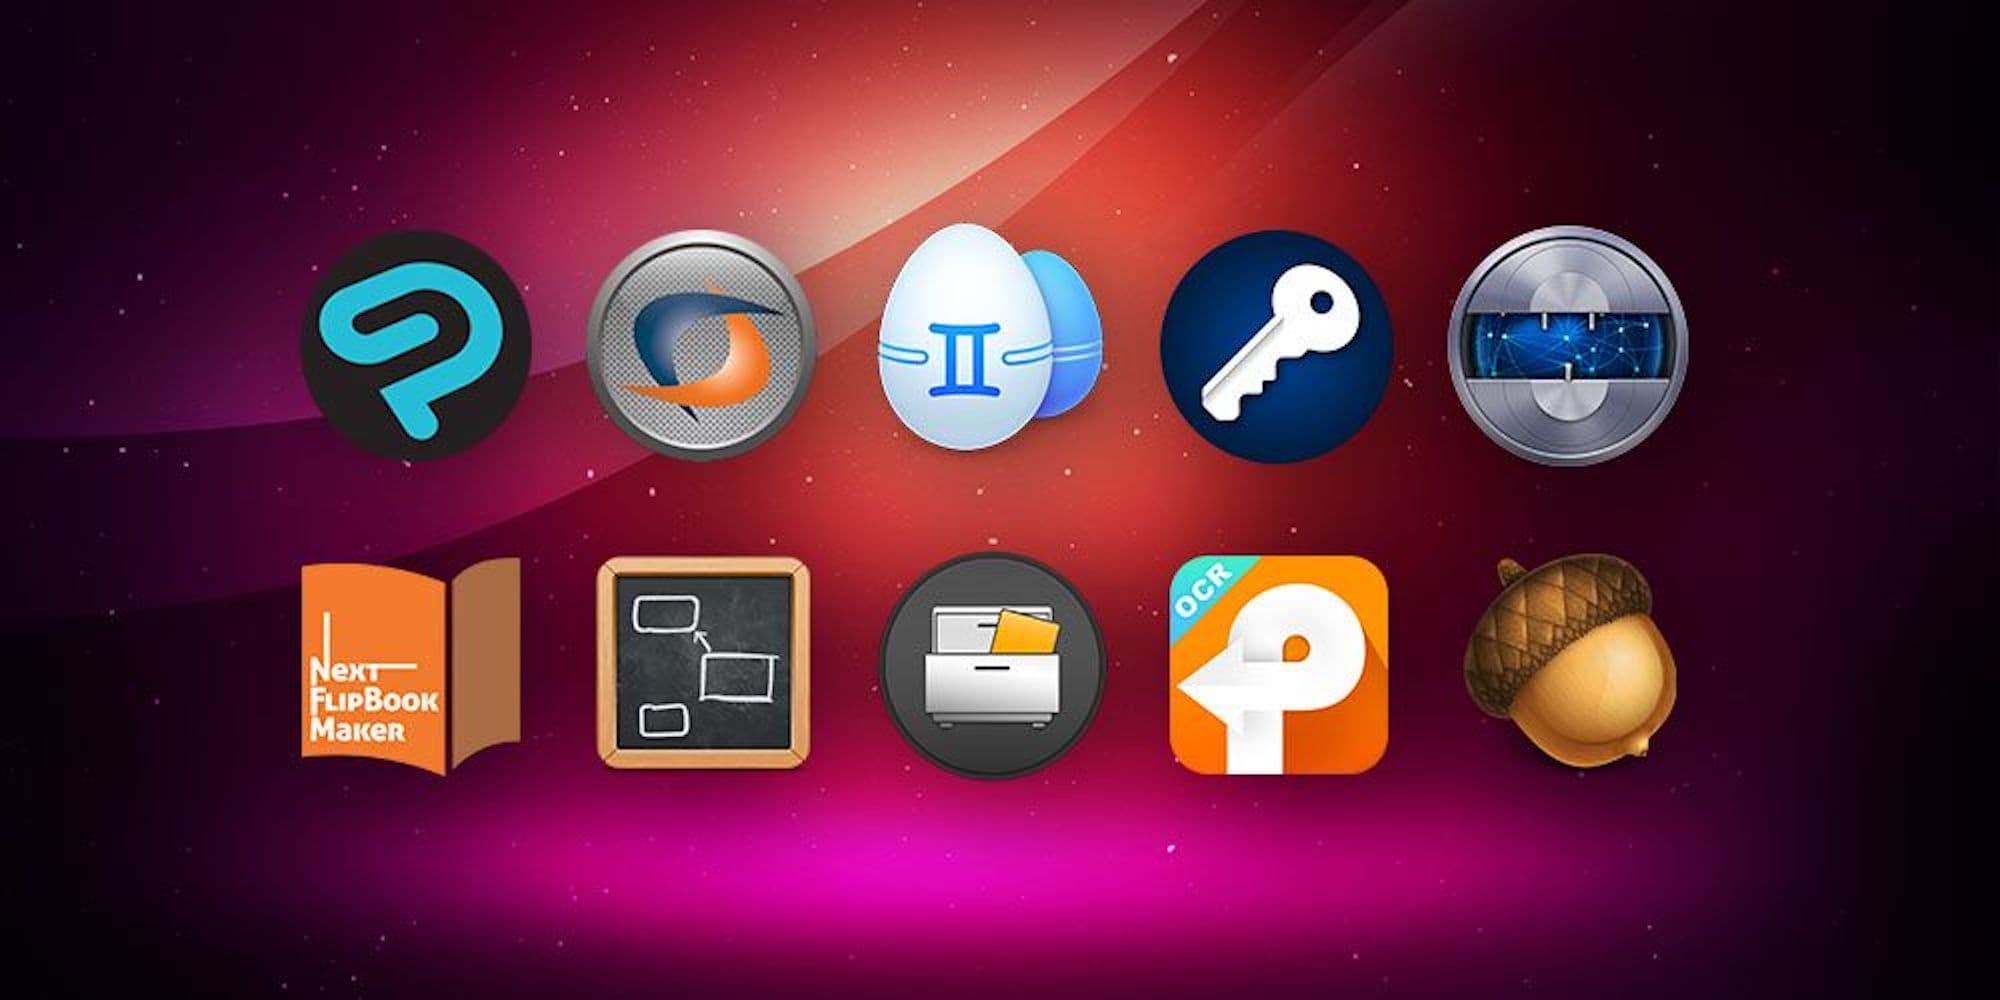 10 Mac apps featuring Acorns 6